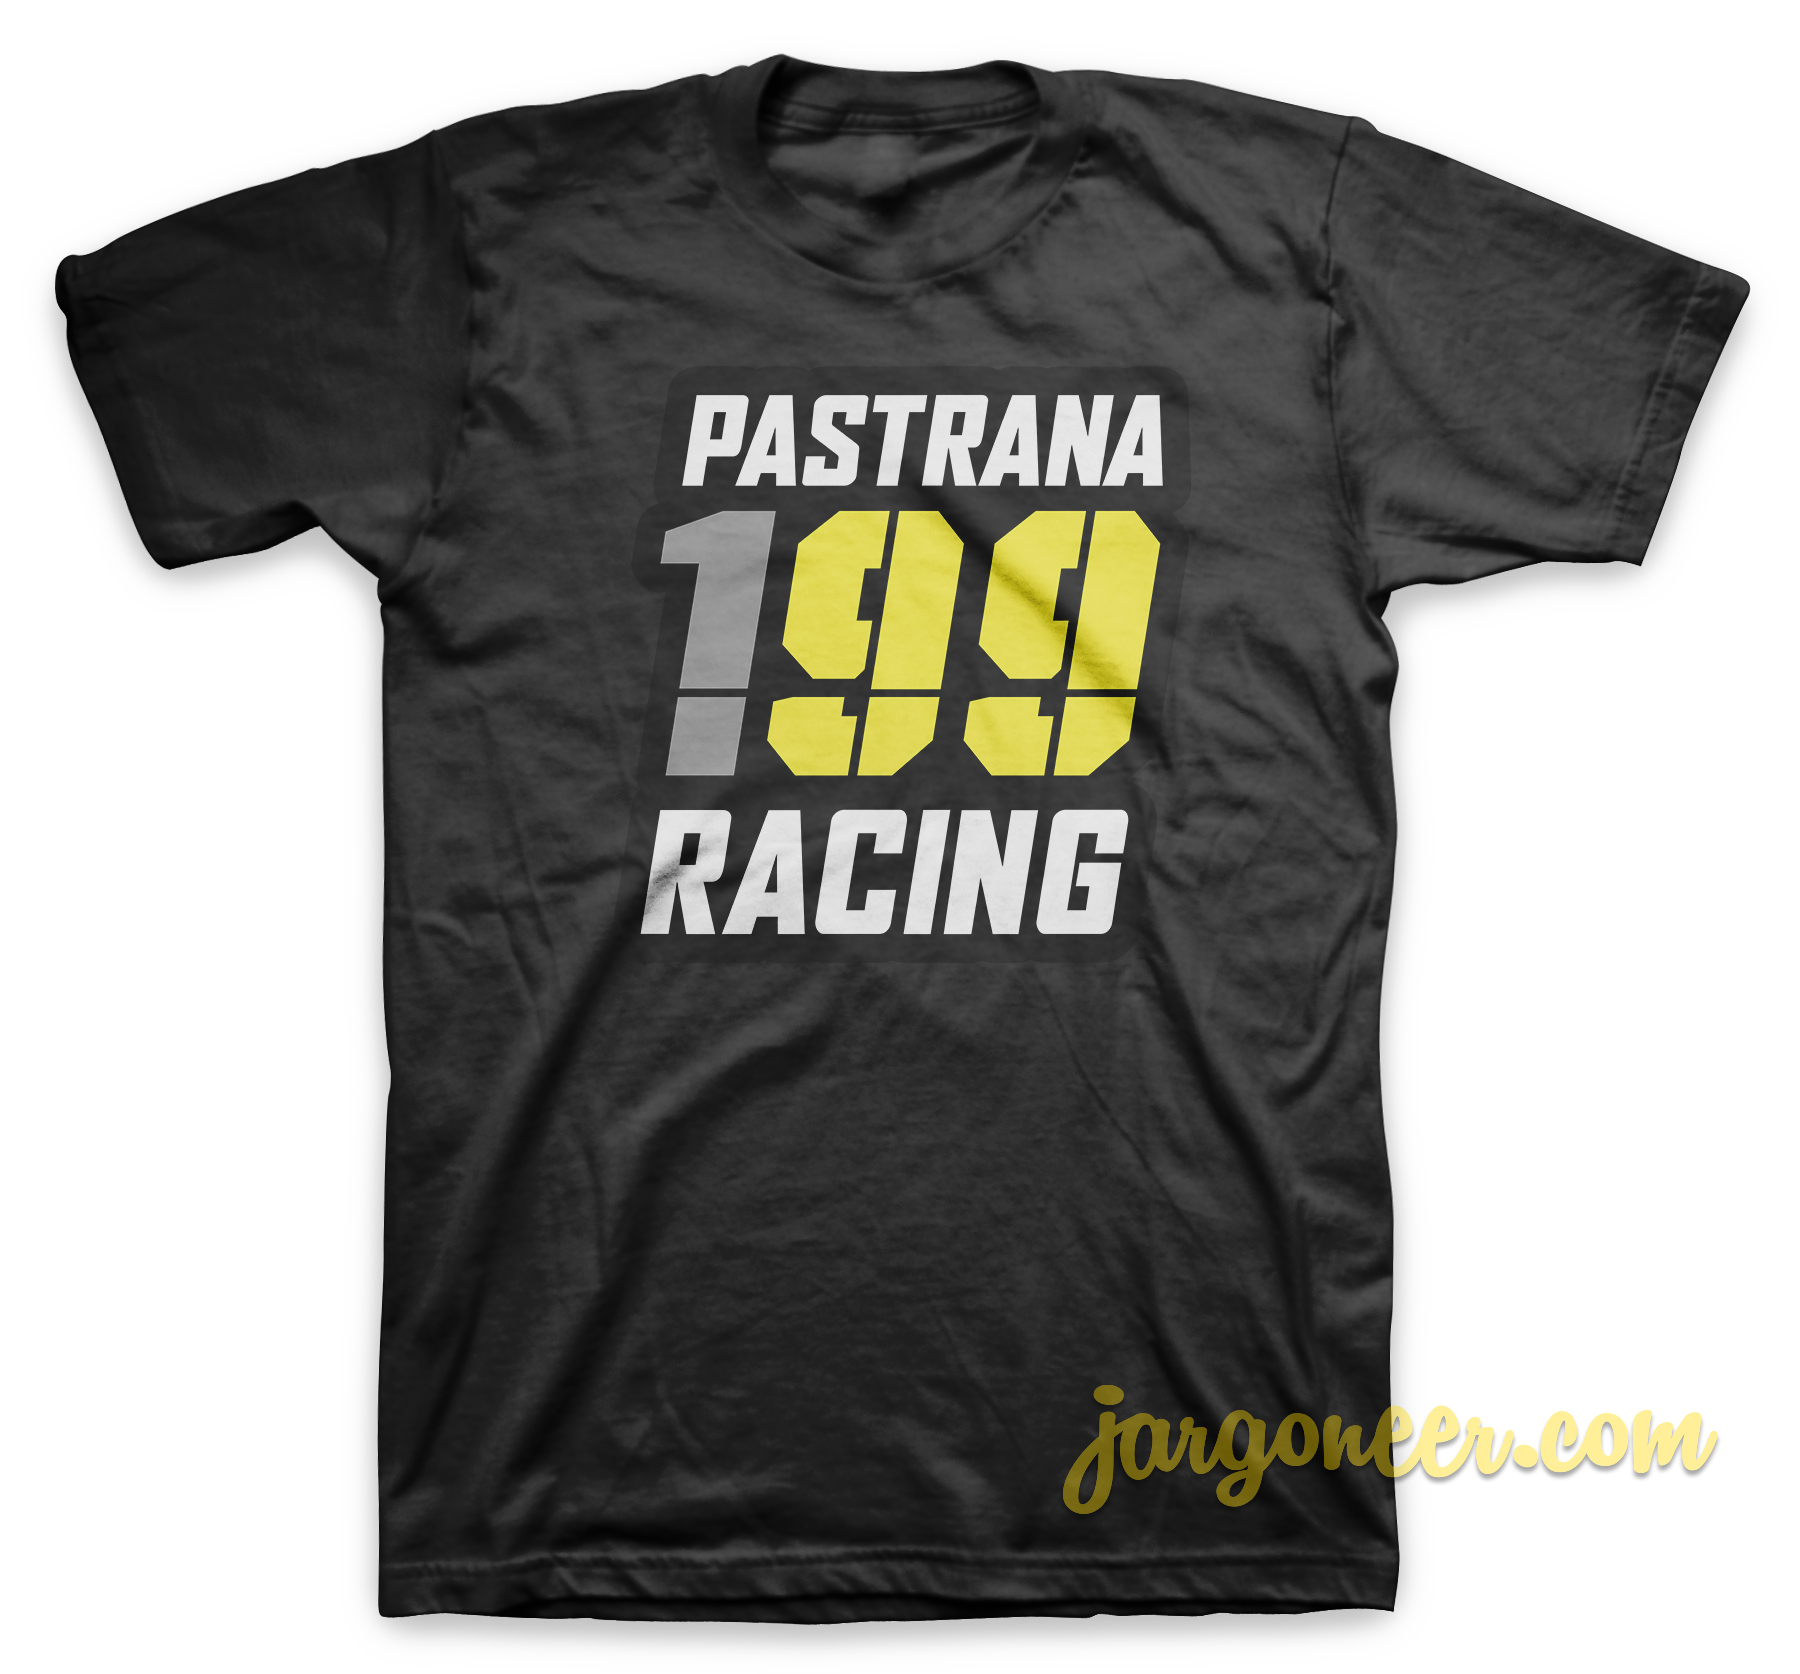 199 Racing Black T Shirt - Shop Unique Graphic Cool Shirt Designs